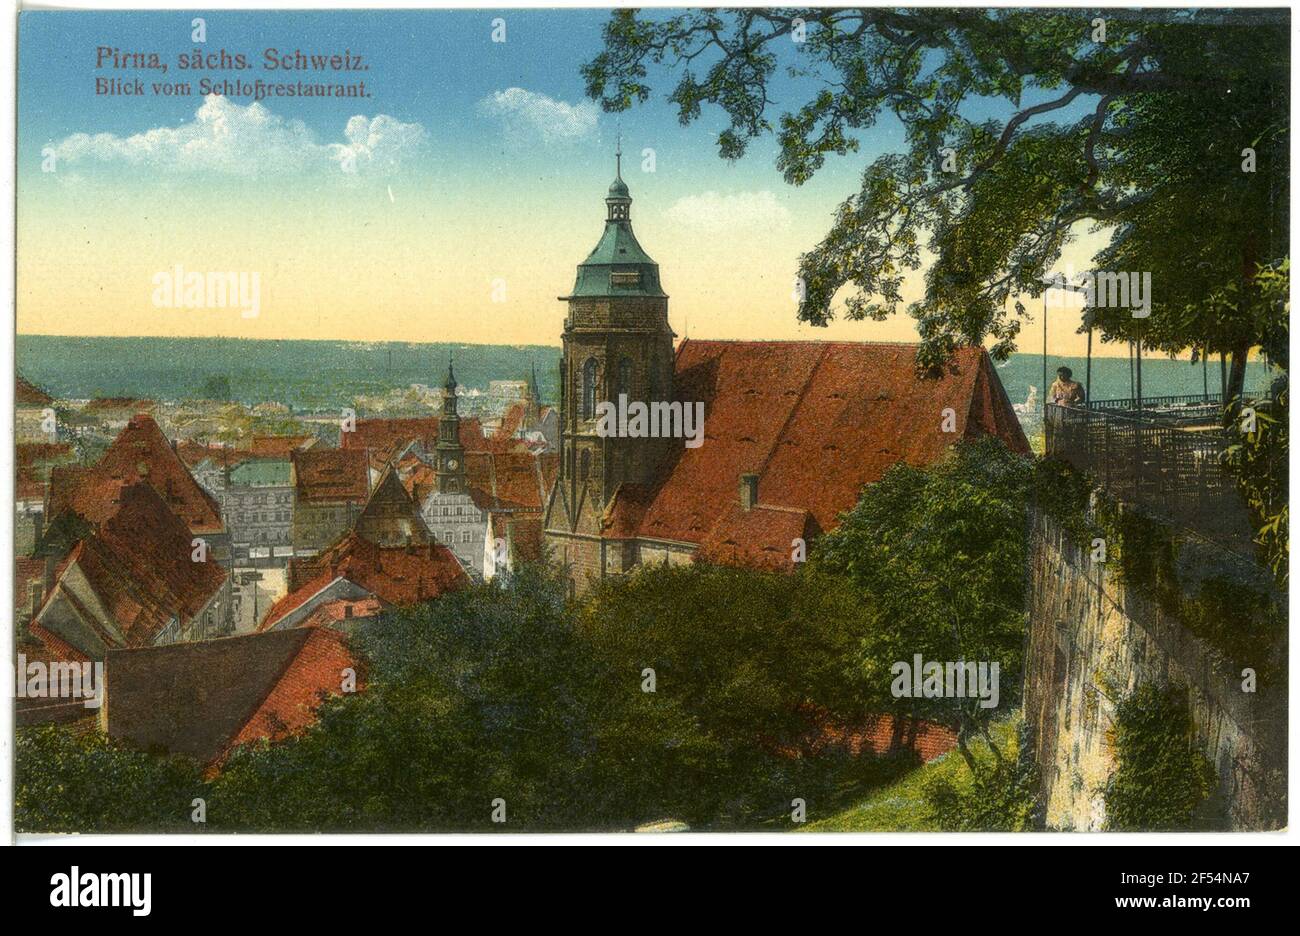 View of Pirna from the Schloßrestaurant Pirna. View of Pirna from the castle restaurant Stock Photo